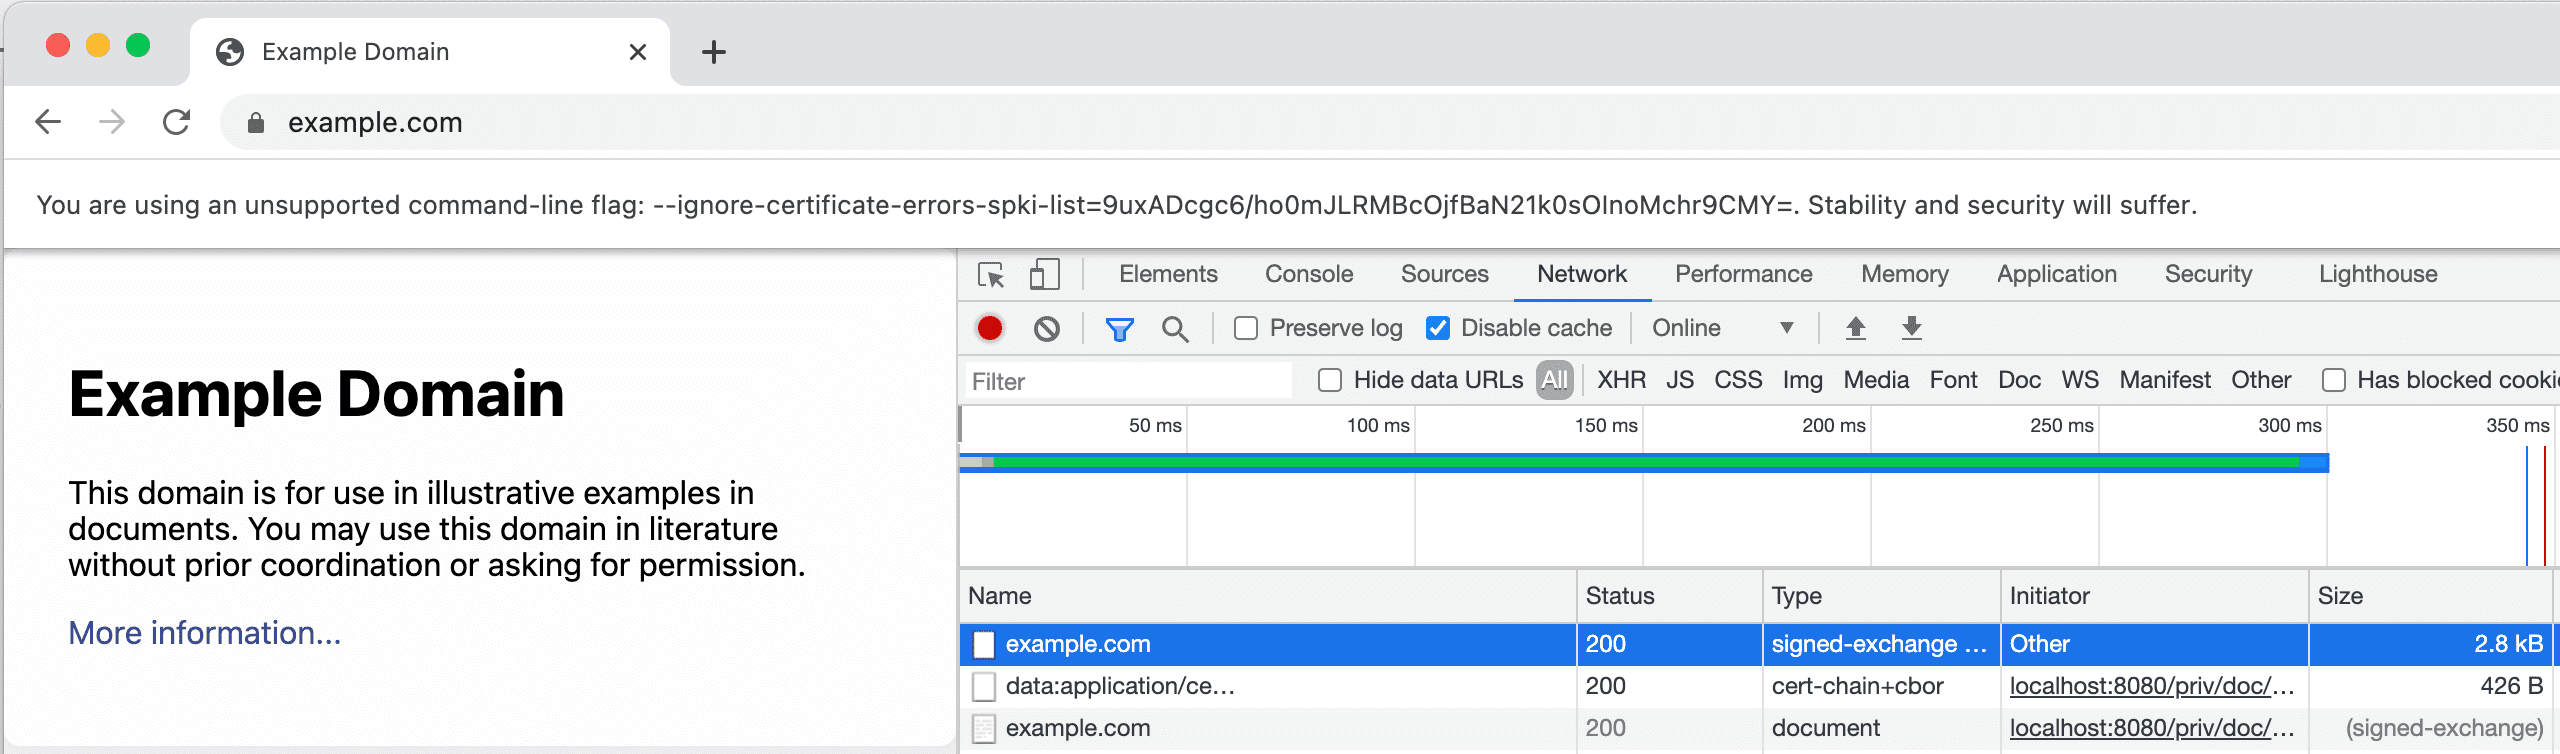 SXG とその証明書を表示している DevTools の [Network] タブのスクリーンショット。